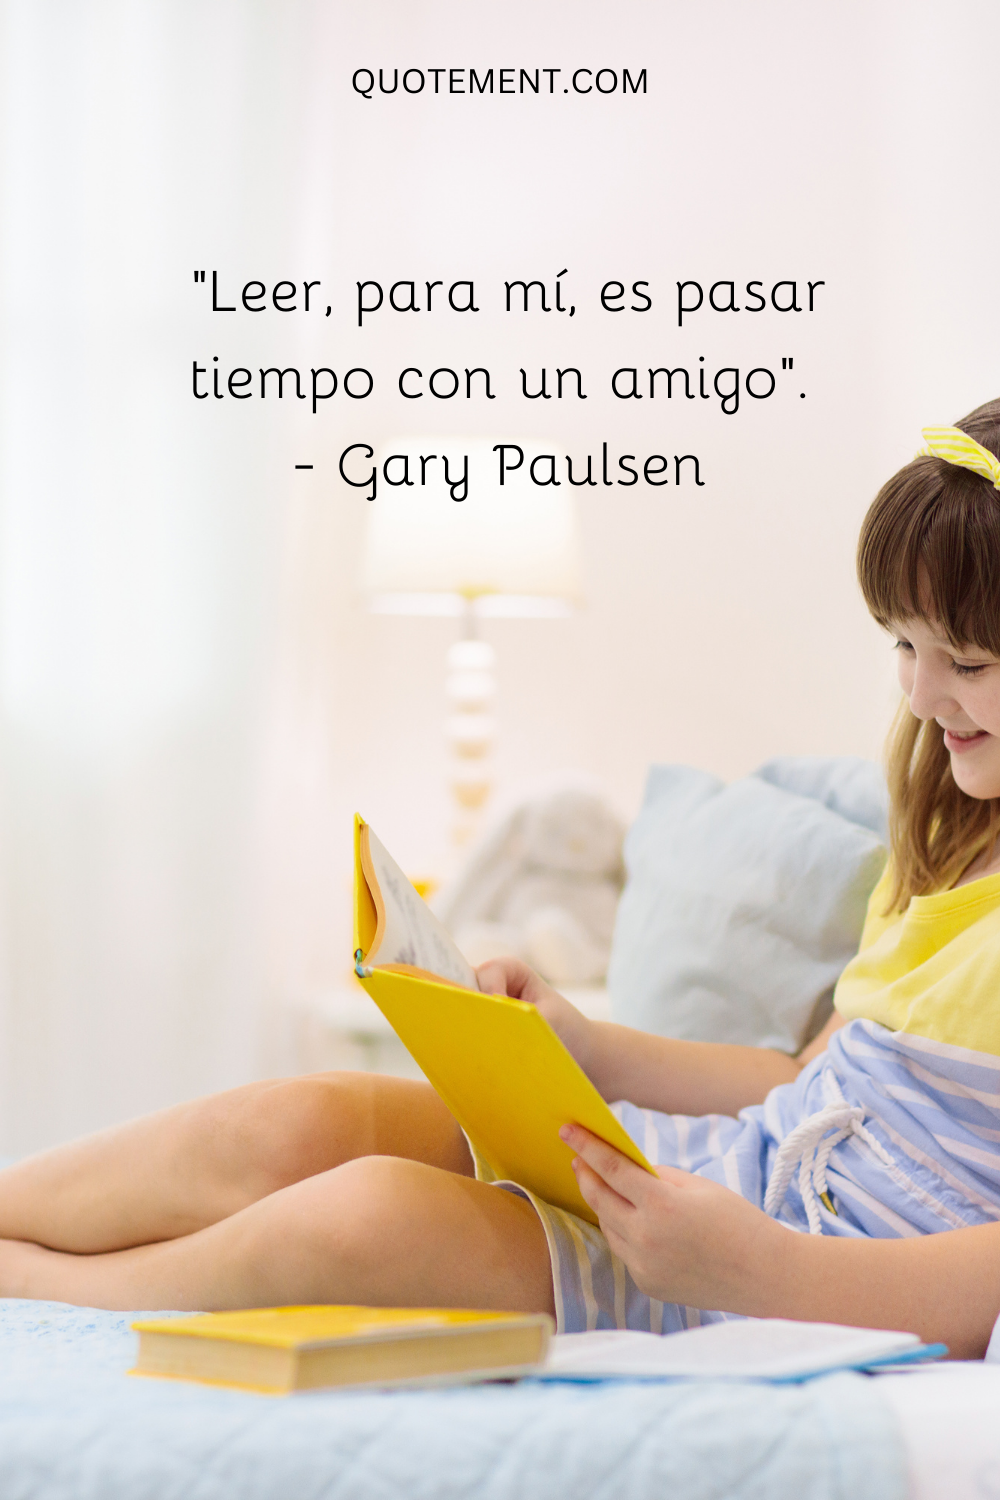 "Para mí, leer es pasar tiempo con un amigo". - Gary Paulsen